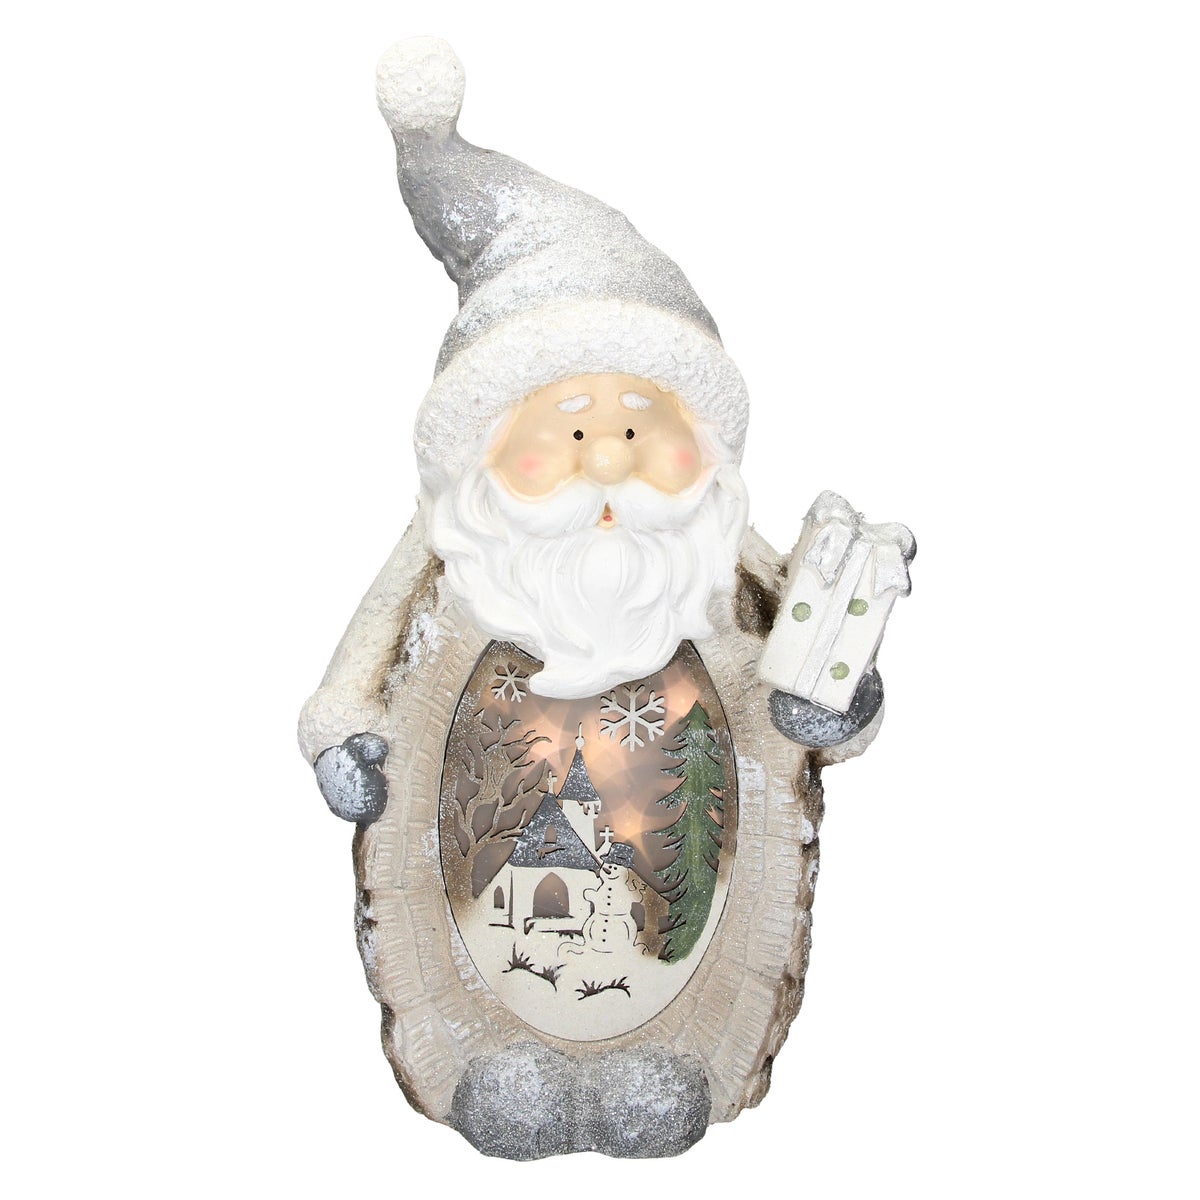 ECD Germany Weihnachtsmann Deko Figur mit LED Beleuchtung 52cm Warmweiß Weiß mit grauem Hut und Schal, Holzoptik, Batteriebetrieben, für Innen, LED-Weihnachtsdeko Weihnachtsfigur Weihnachten Tischdeko